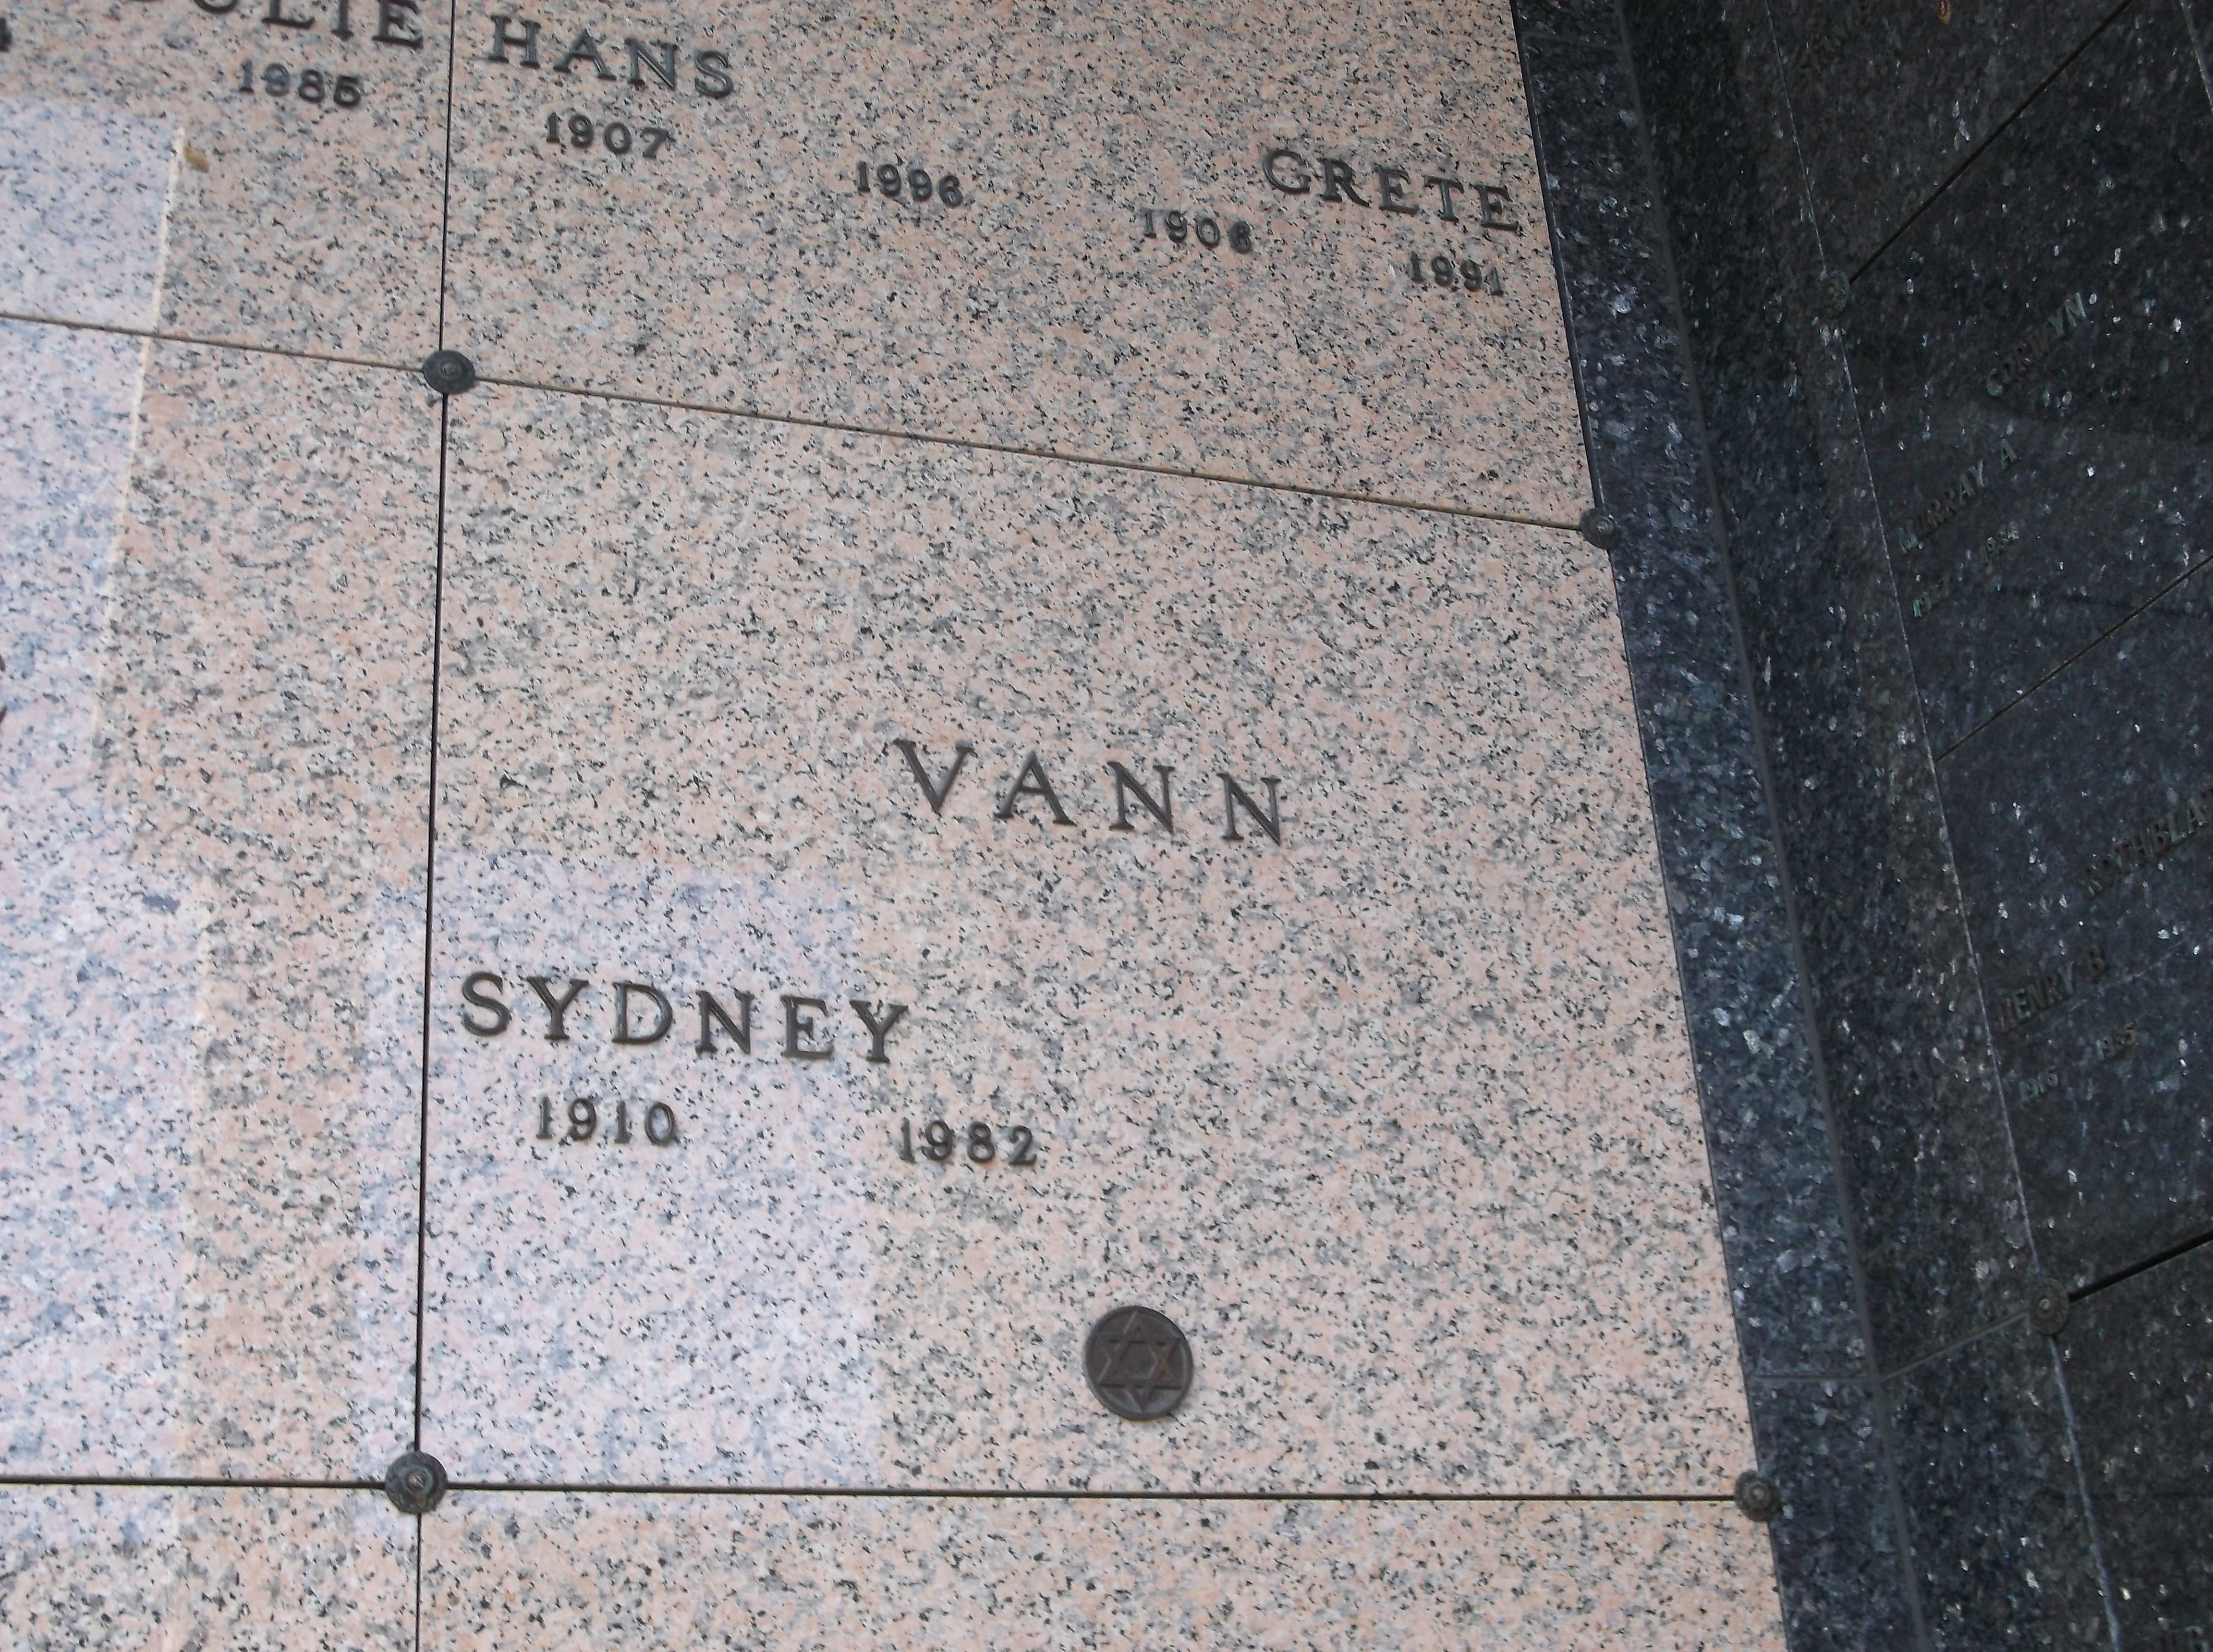 Sydney Vann